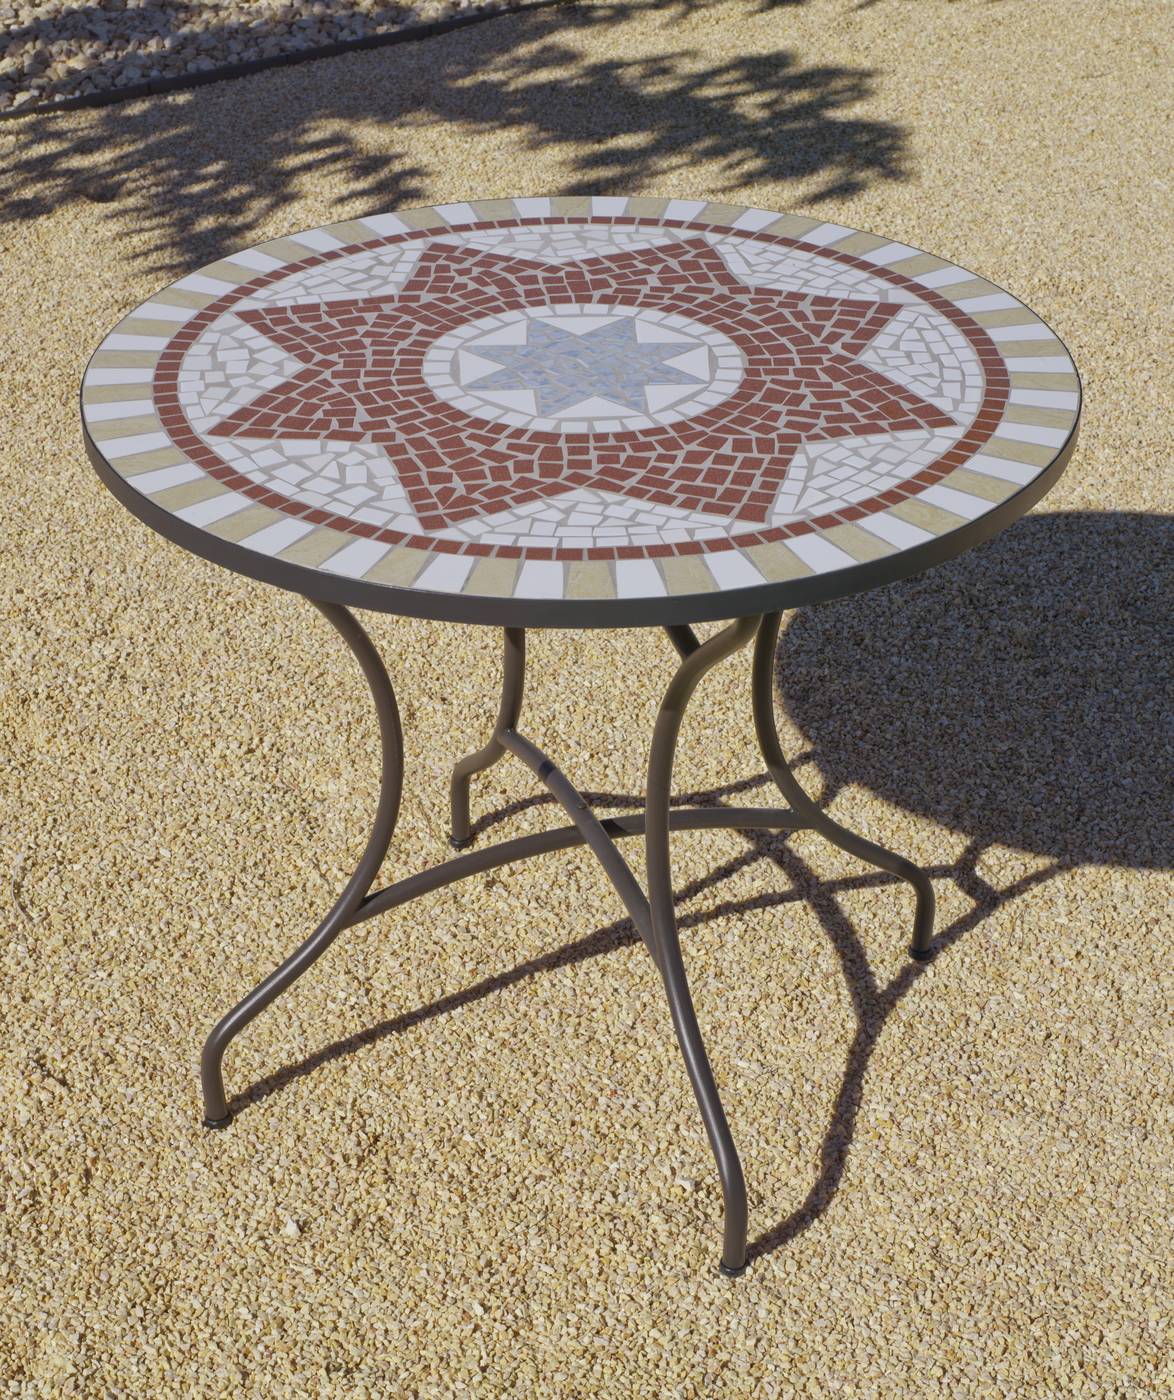 Conjunto Mosaico Aney-Bergamo 100-4 - Conjunto de acero forjado color bronce: 1 mesa de forja con panel mosaico + 4 sillones de ratán sintético + 4 cojines